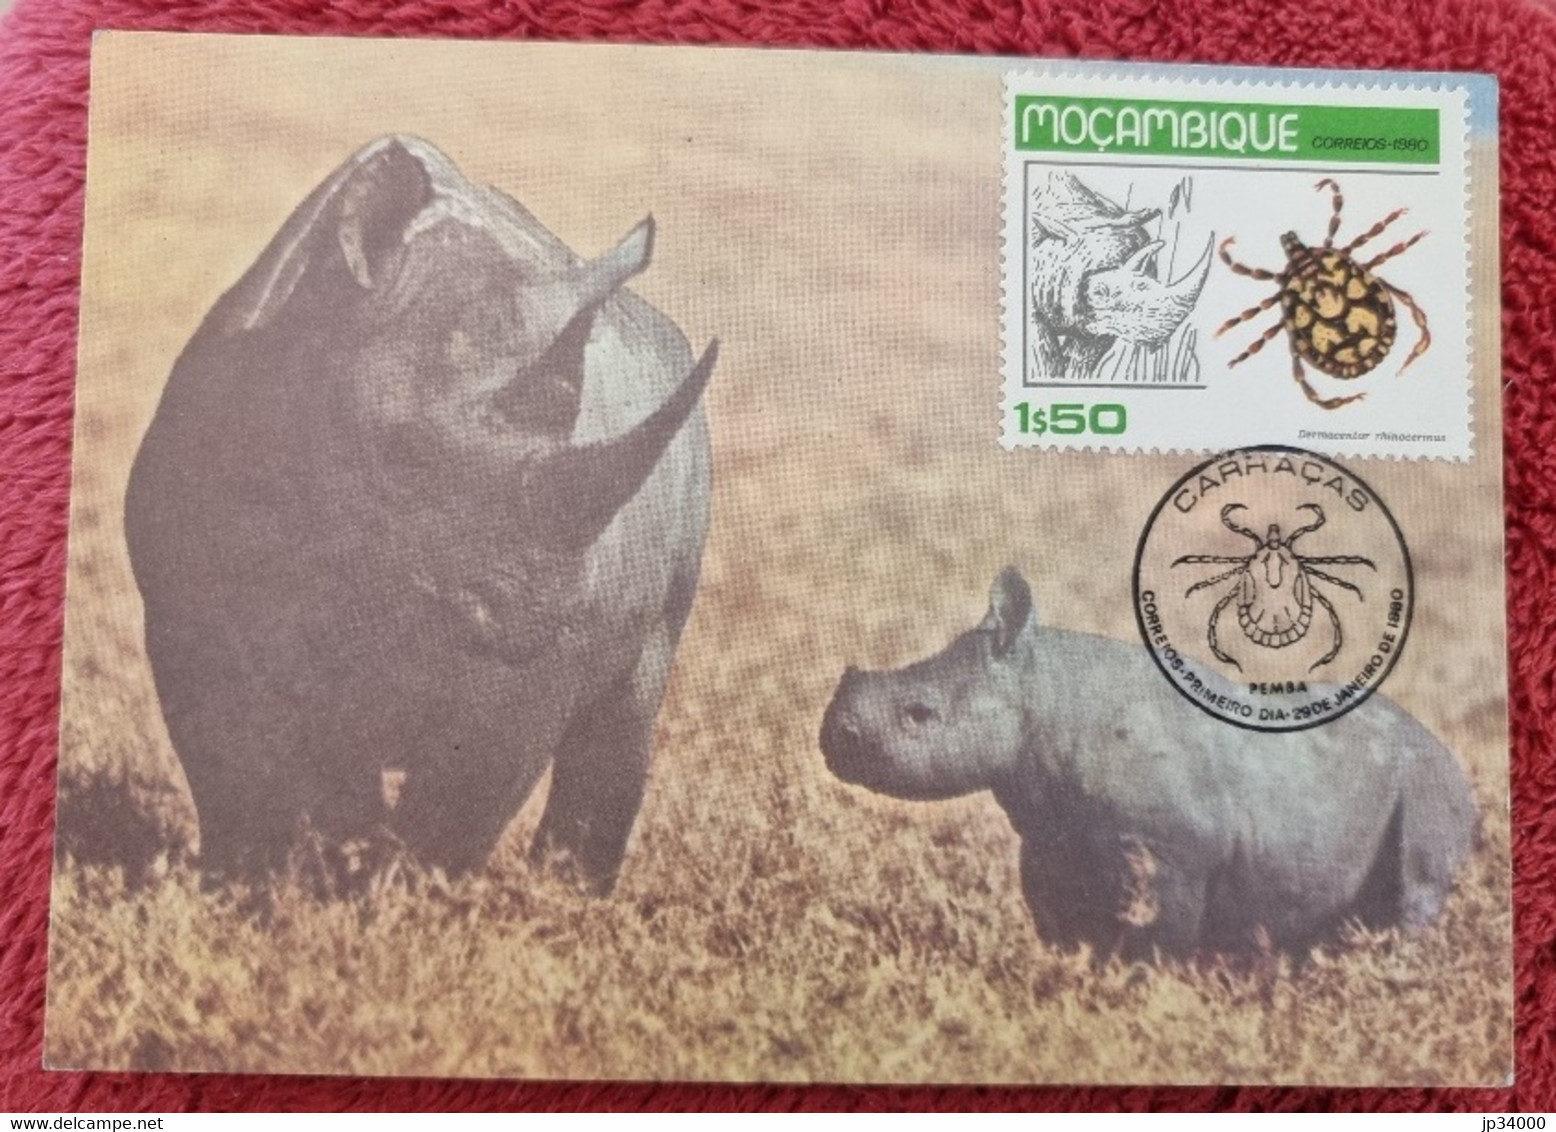 MOZAMBIQUE  Rhinocéros, Insectes, Tique, Yvert N° 732 FDC, 1er Jour, Carte Maximum 1980 - Rhinocéros